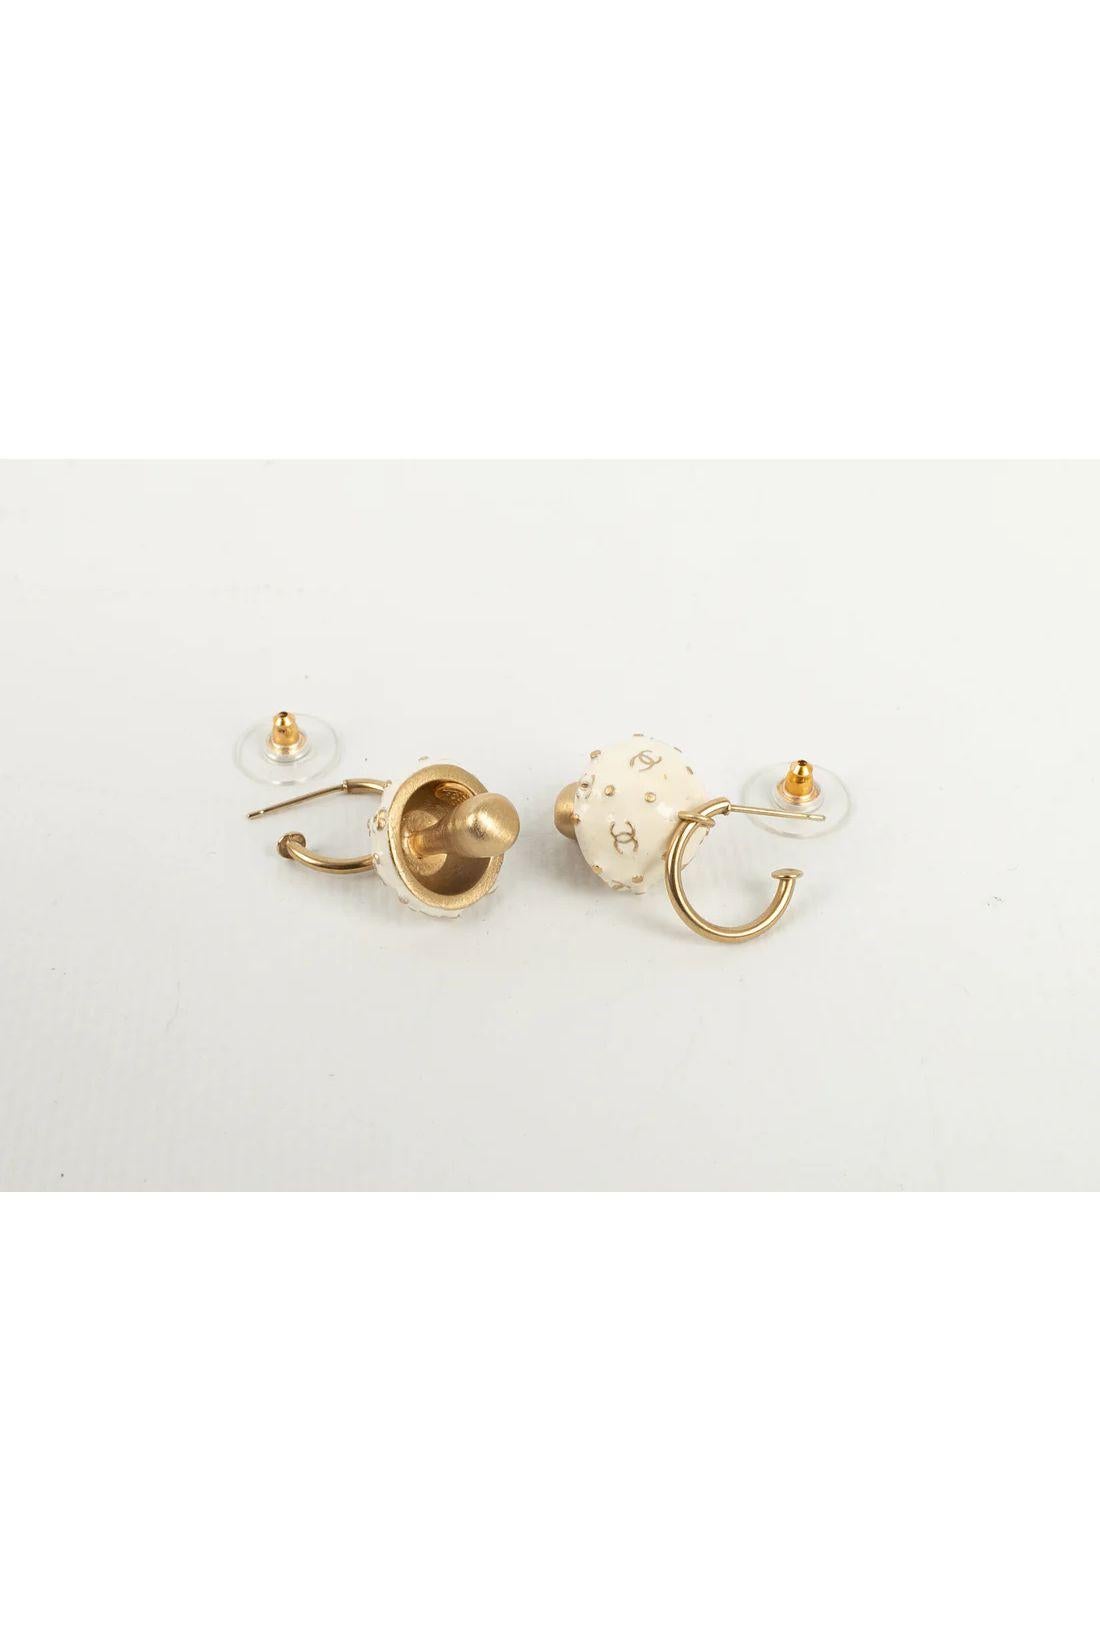 marni mushroom earrings